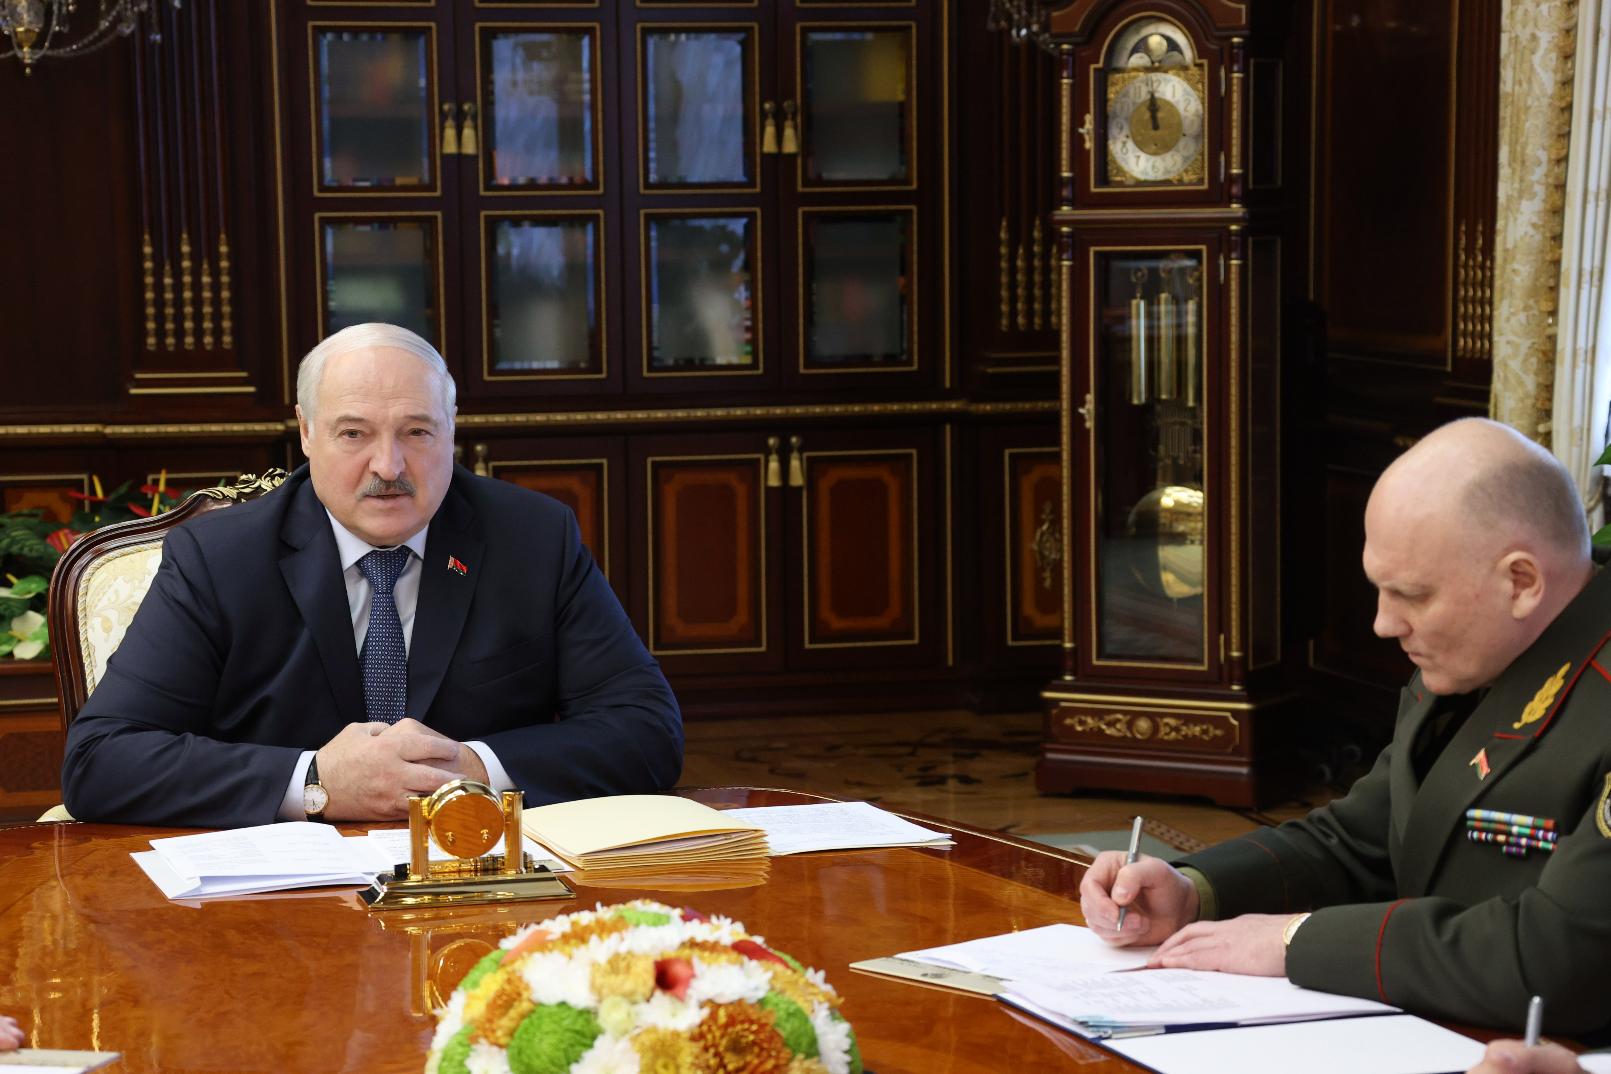 Лукашенко: скрытого мышкования типа крышевания в Беларуси быть не должно 